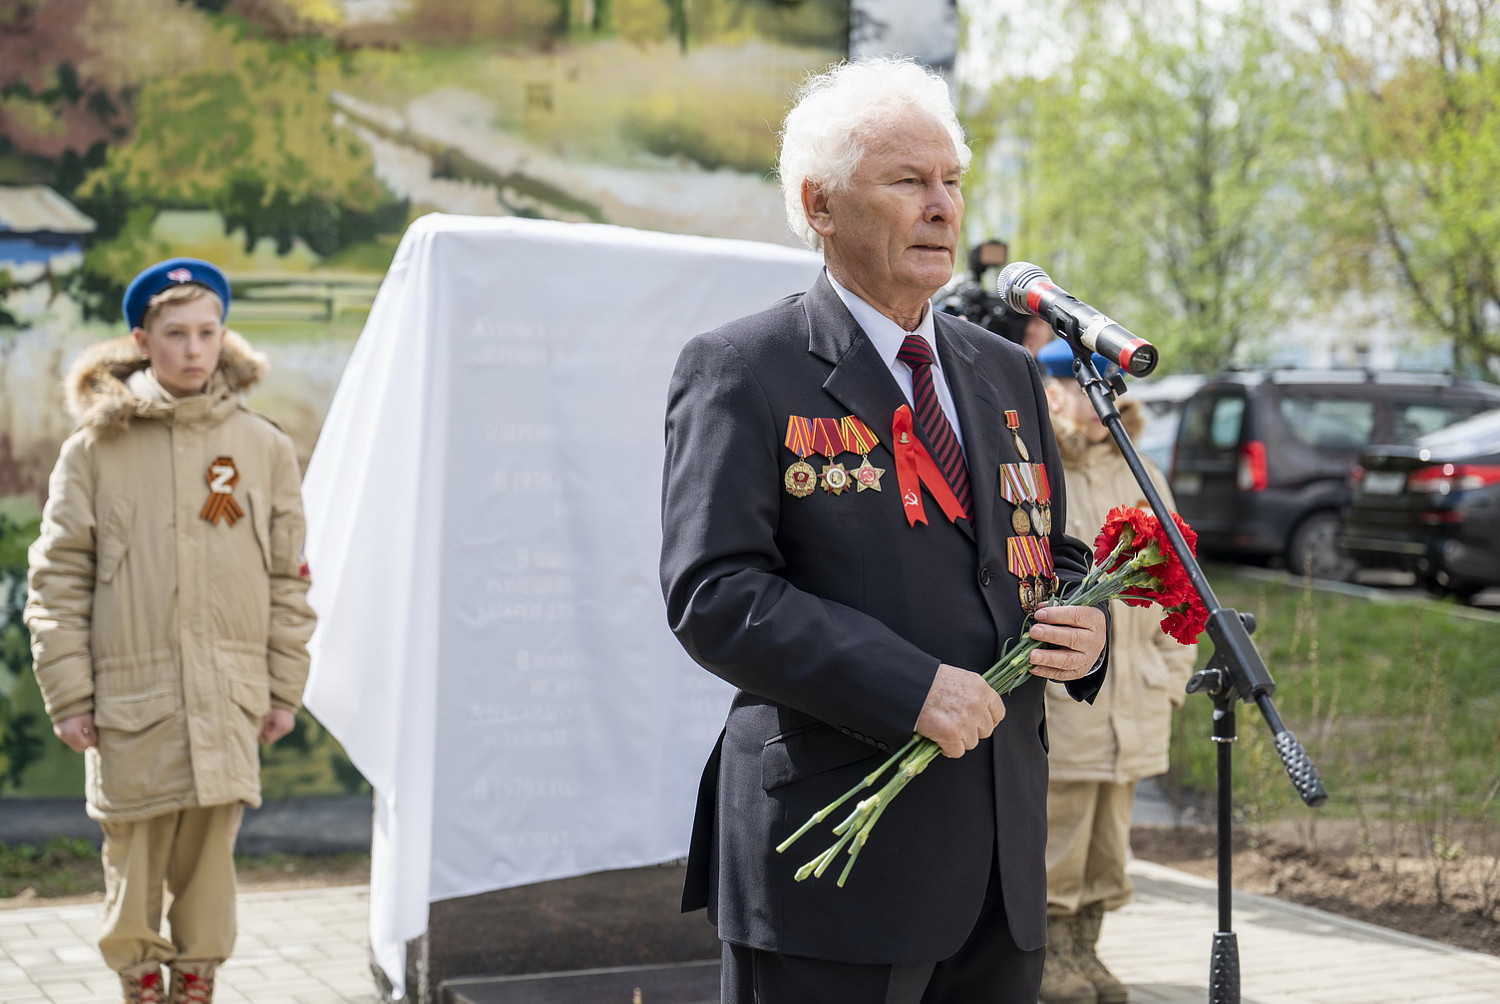 В Видном открыли мемориал в память о жителях деревни Жуково, погибших в годы войны